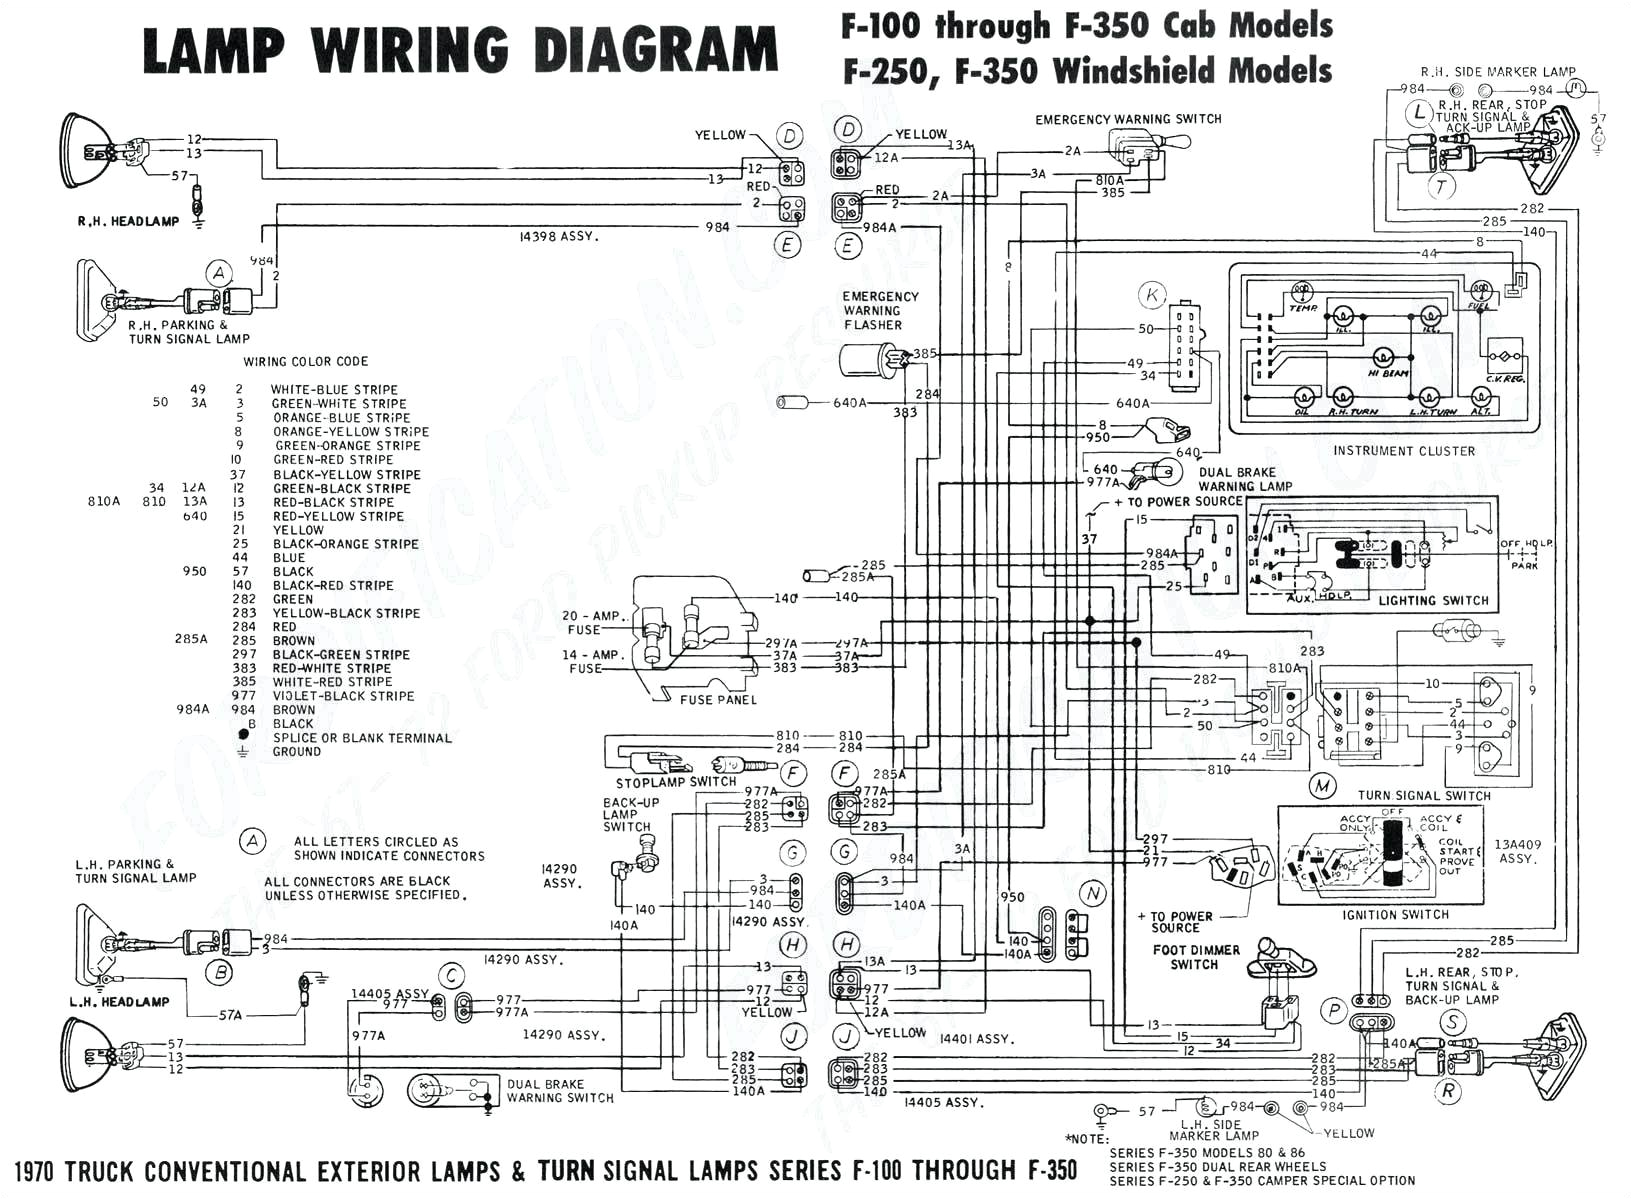 1990 bmw 535i relay diagram likewise bmw fuel pump relay location control module diagram likewise 2002 gmc yukon denali fuse diagram